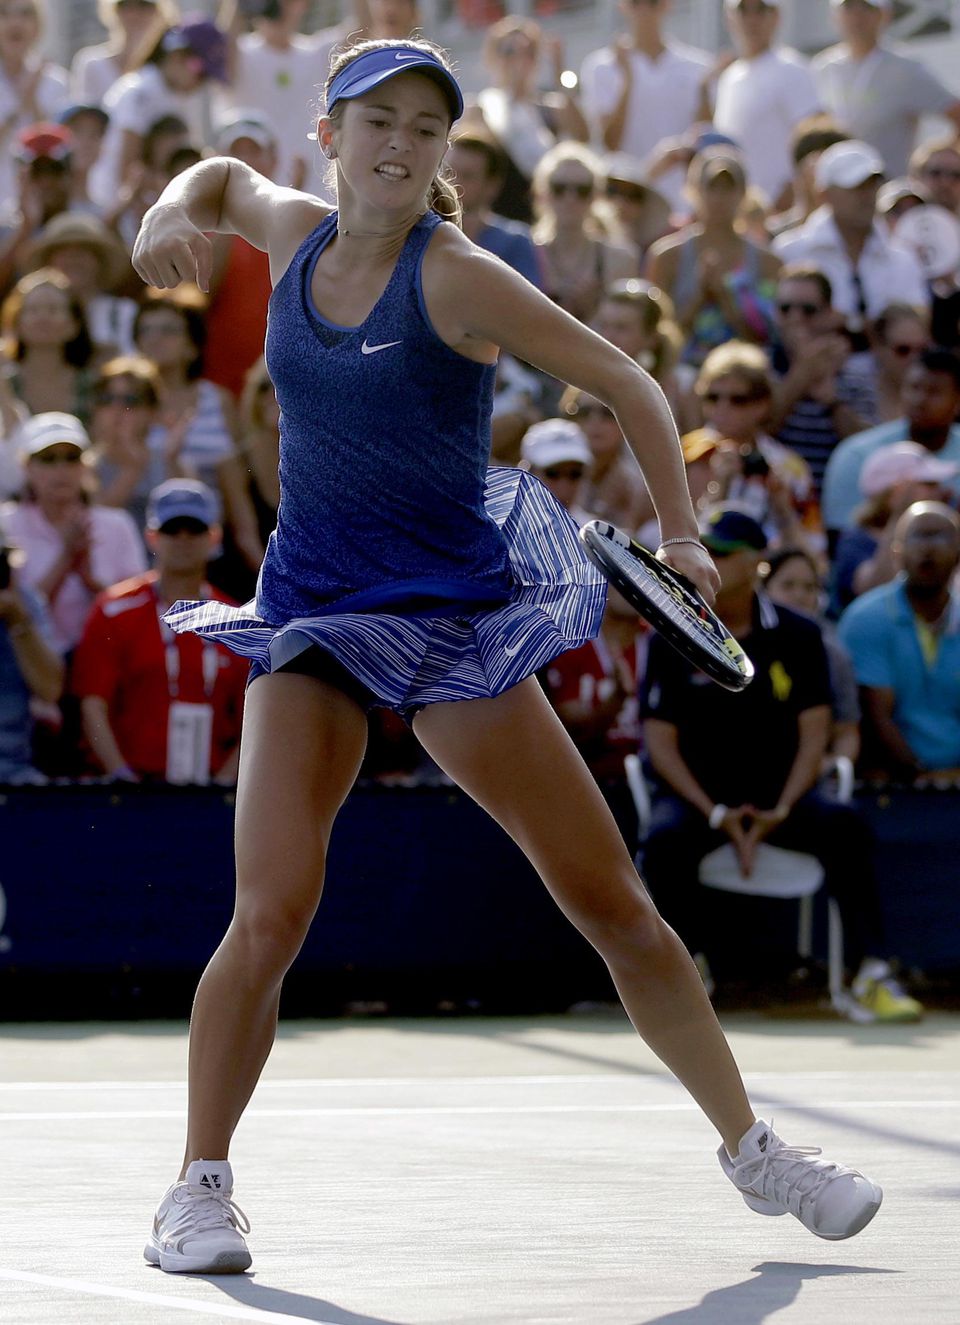 Catherine Bellisová s víťazným gestom po úspešnom údere v zápase 1. kola grandslamového turnaja US Open proti Slovenke Dominike Cibulkovej.